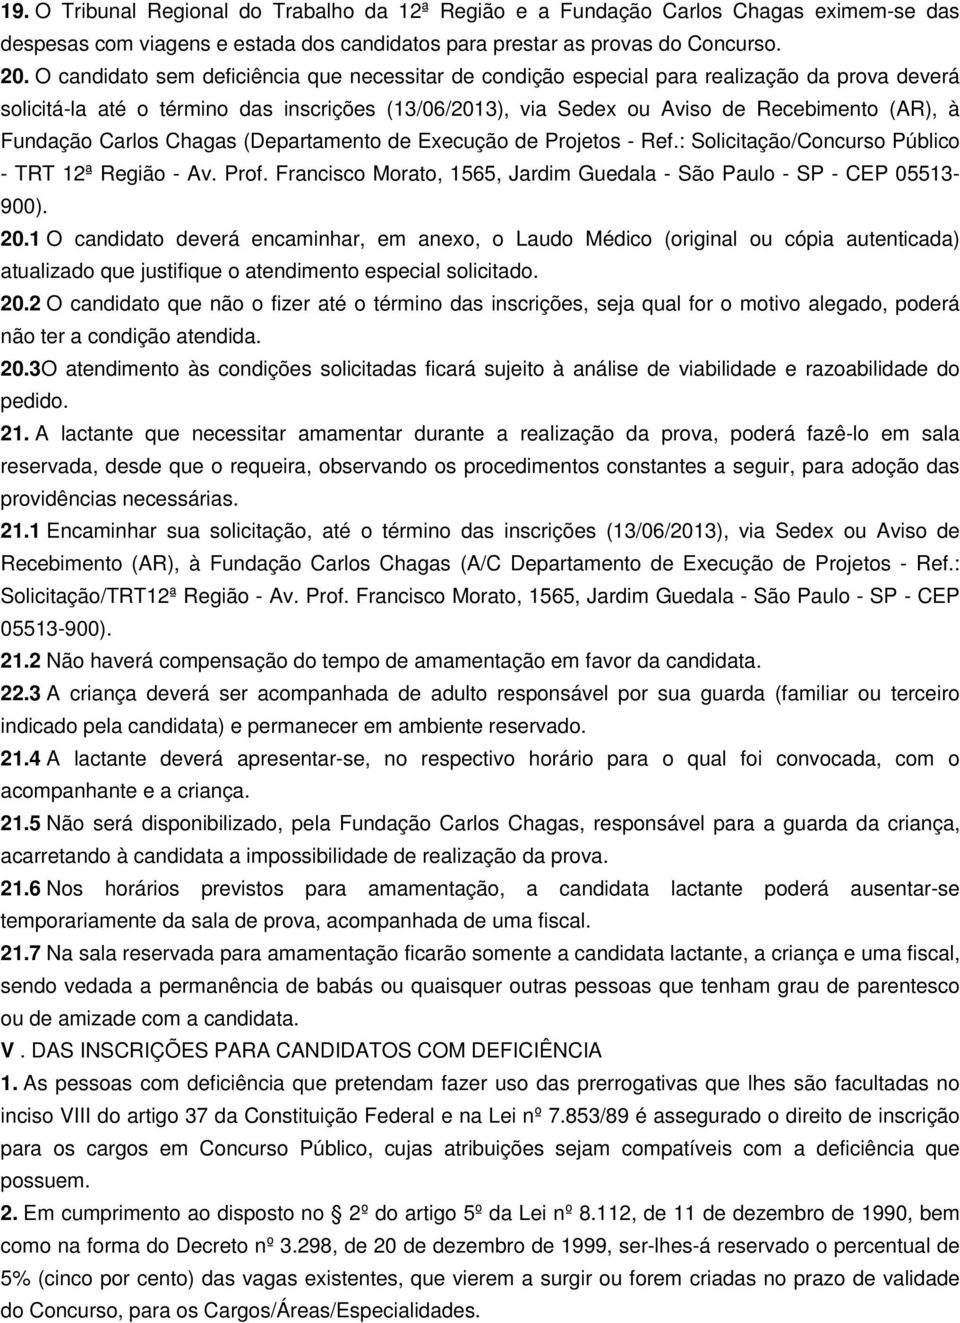 Fundação Carlos Chagas (Departamento de Execução de Projetos - Ref.: Solicitação/Concurso Público - TRT 12ª Região - Av. Prof. Francisco Morato, 1565, Jardim Guedala - São Paulo - SP - CEP 05513-900).